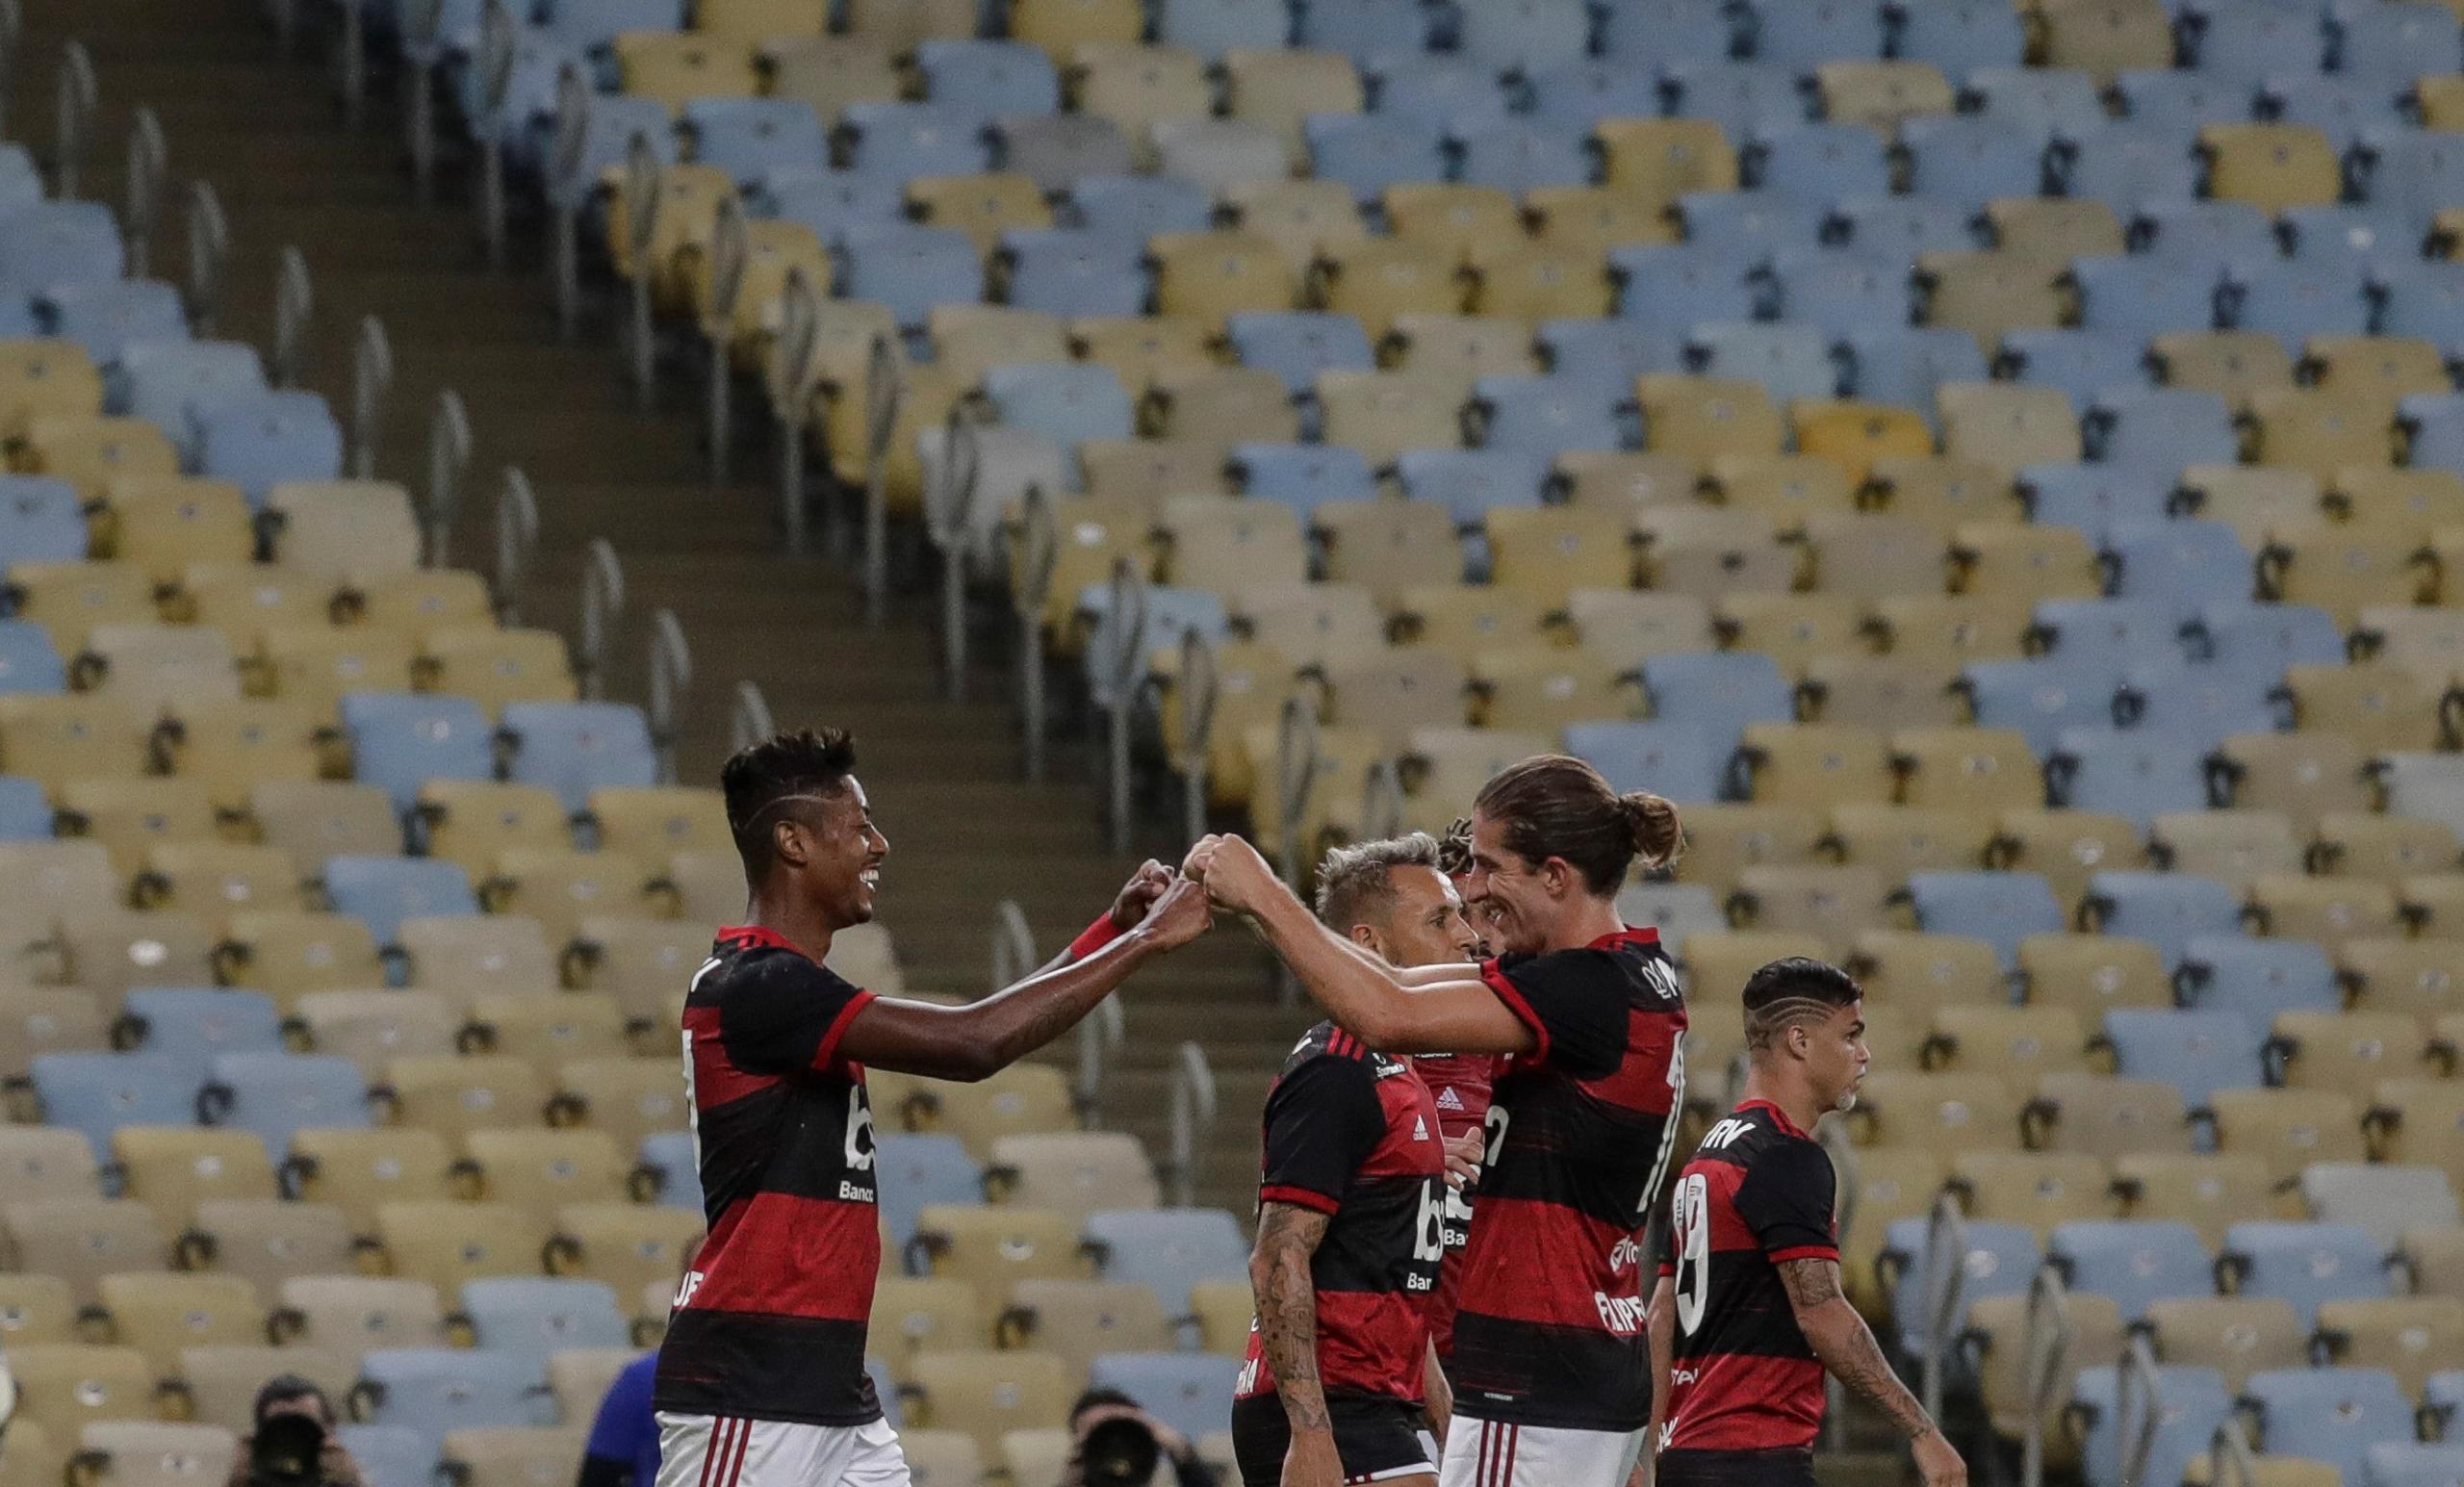 Los jugadores de Flamengo Bruno Henrique (izq) y Filipe Luis (der), celebran el segundo gol de Flamengo el jueves, durante un partido por el campeonato Carioca, en el Estadio Maracaná de Río de Janeiro. EFE/Antonio Lacerda
